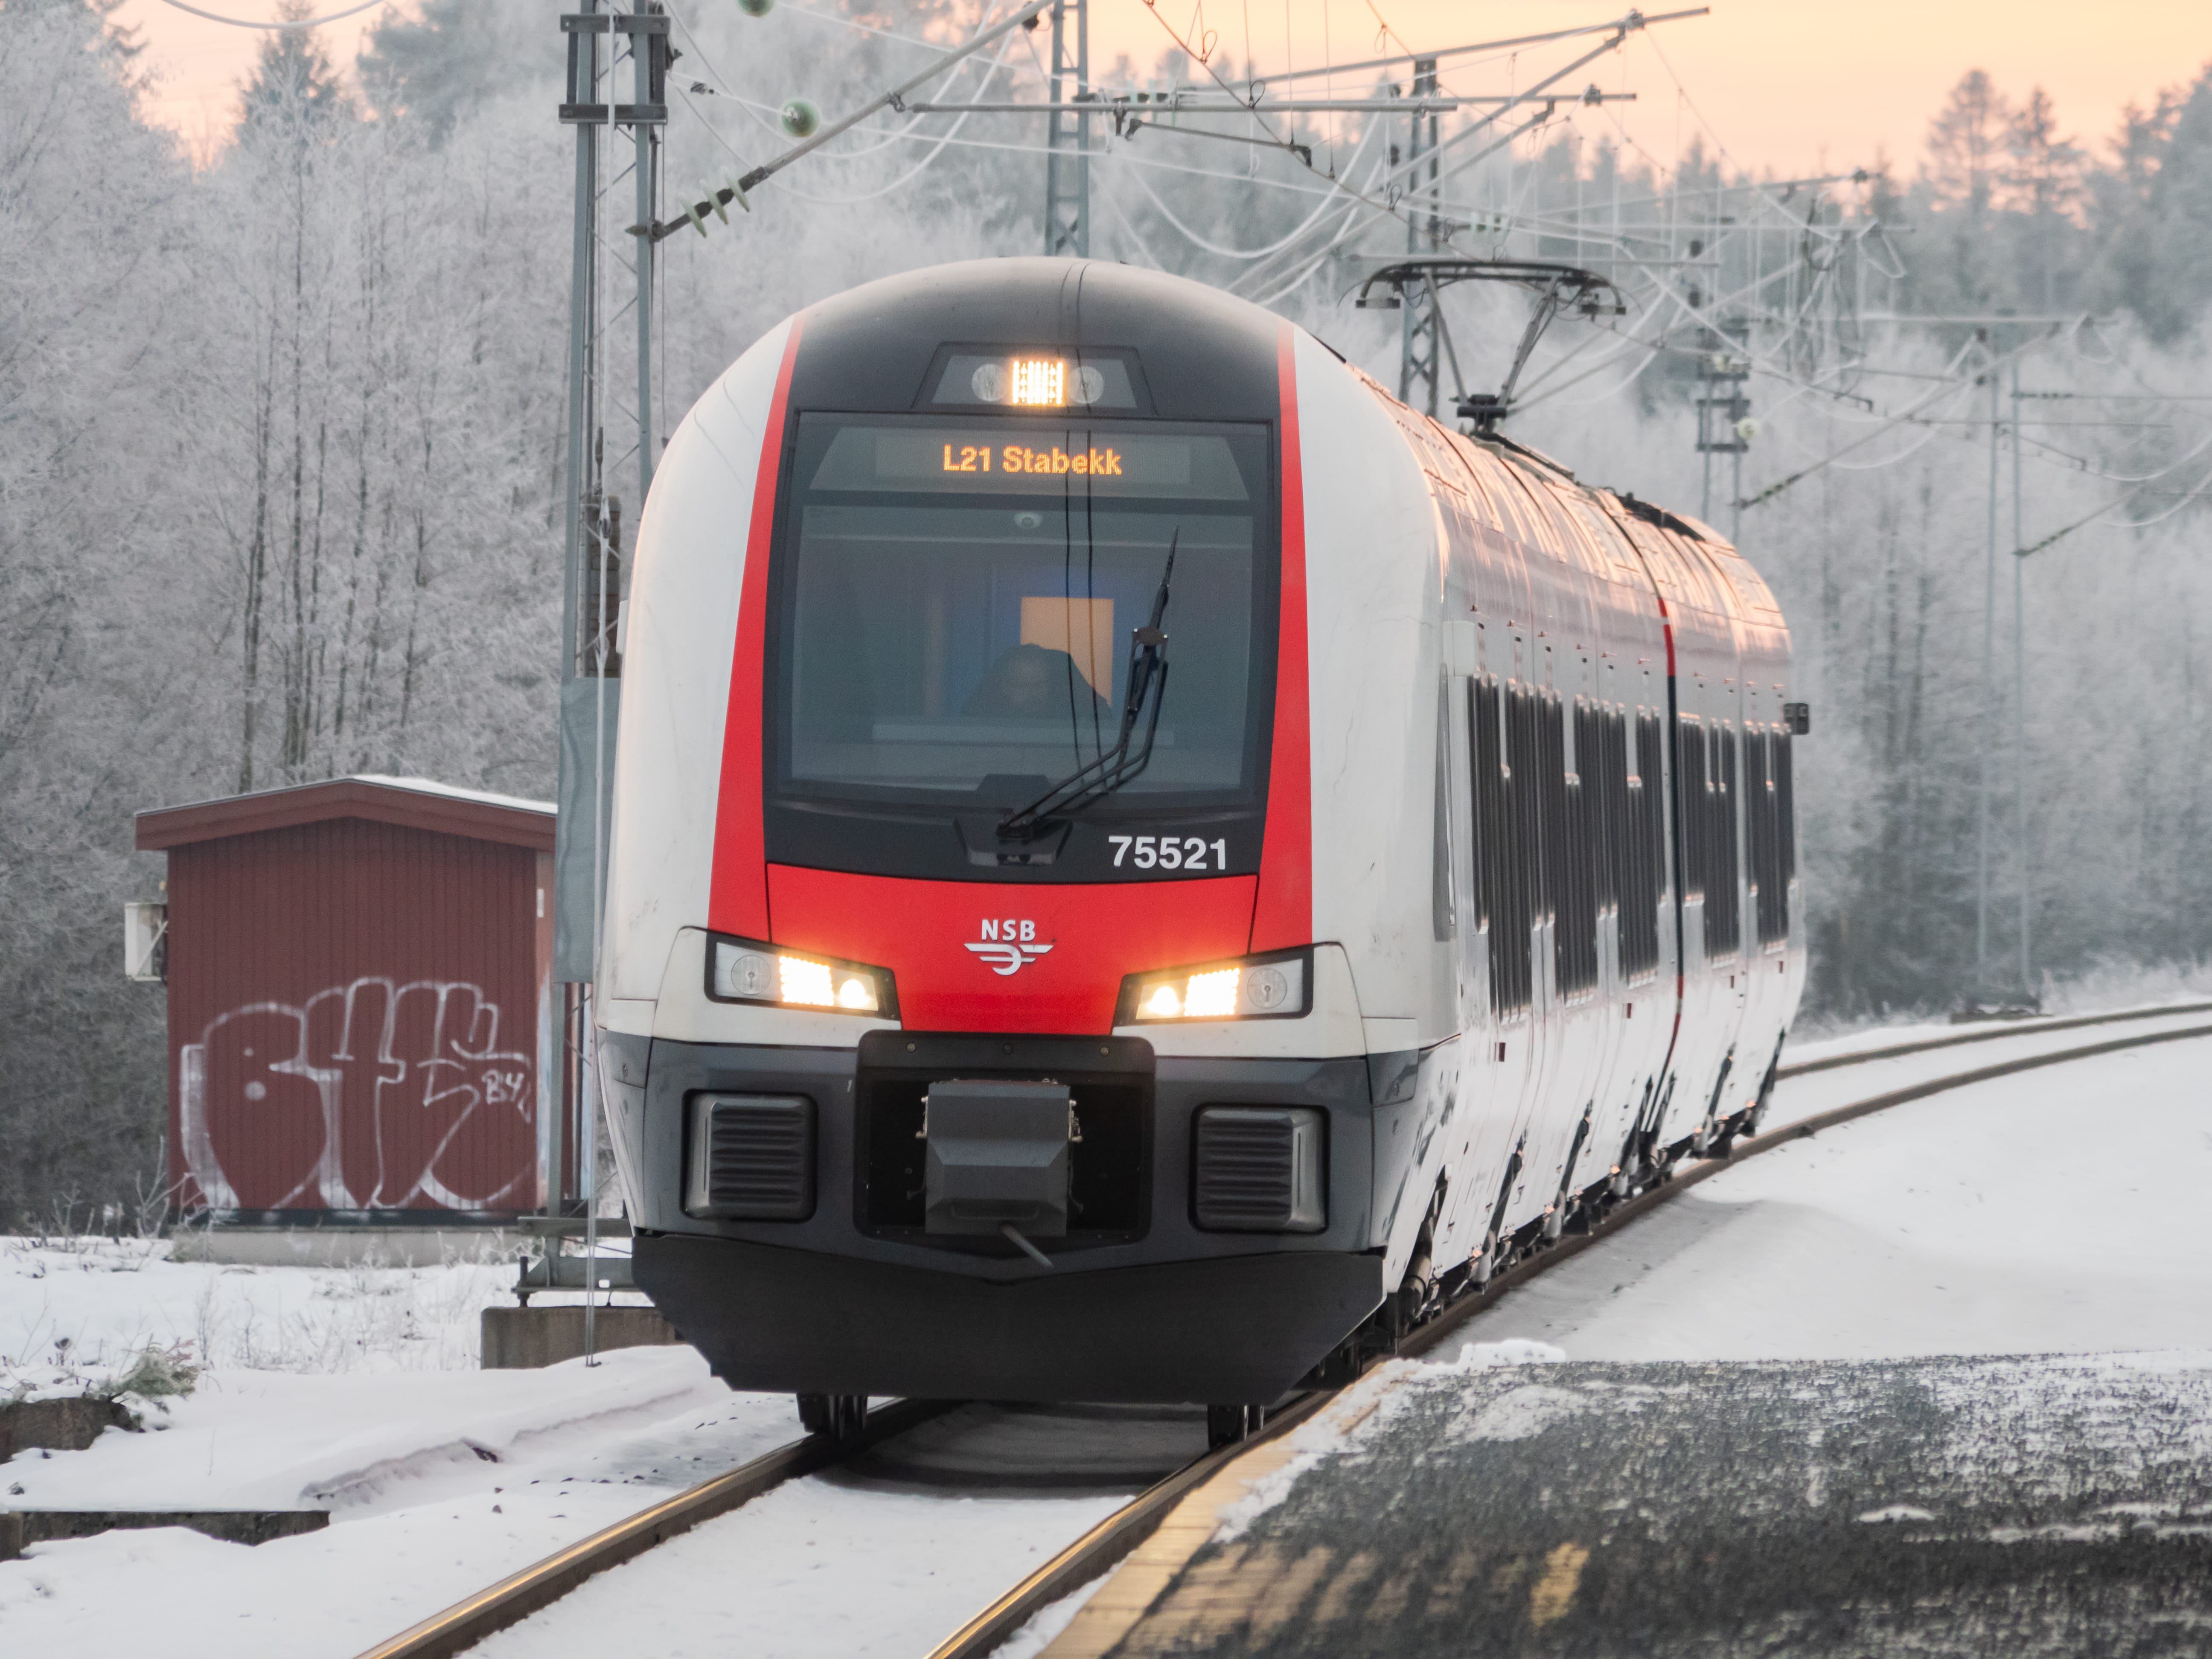 Национальная норвежская железнодорожная компания, предлагает услуги поездов на большей части территории Норвегии